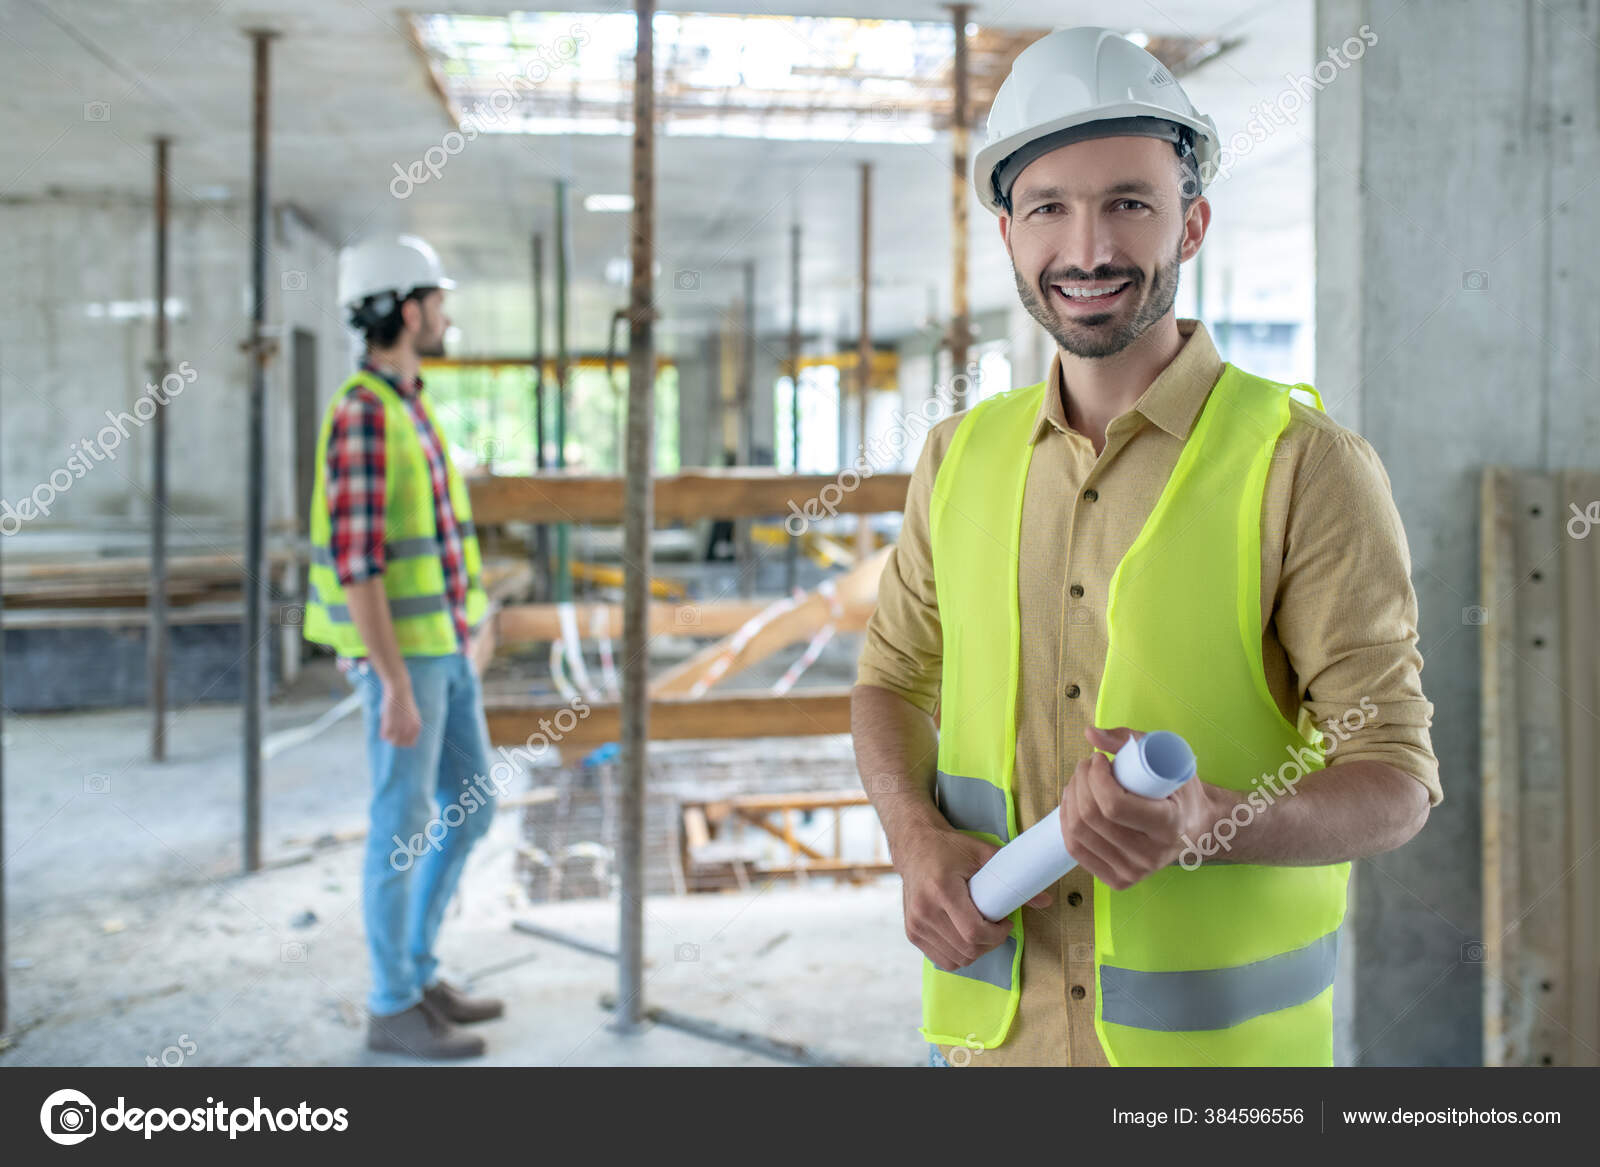 Bauarbeiter in gelber Weste mit Blaupause, lächelnd, sein Kollege im  Hintergrund - Stockfotografie: lizenzfreie Fotos © Dmyrto_Z 384596556